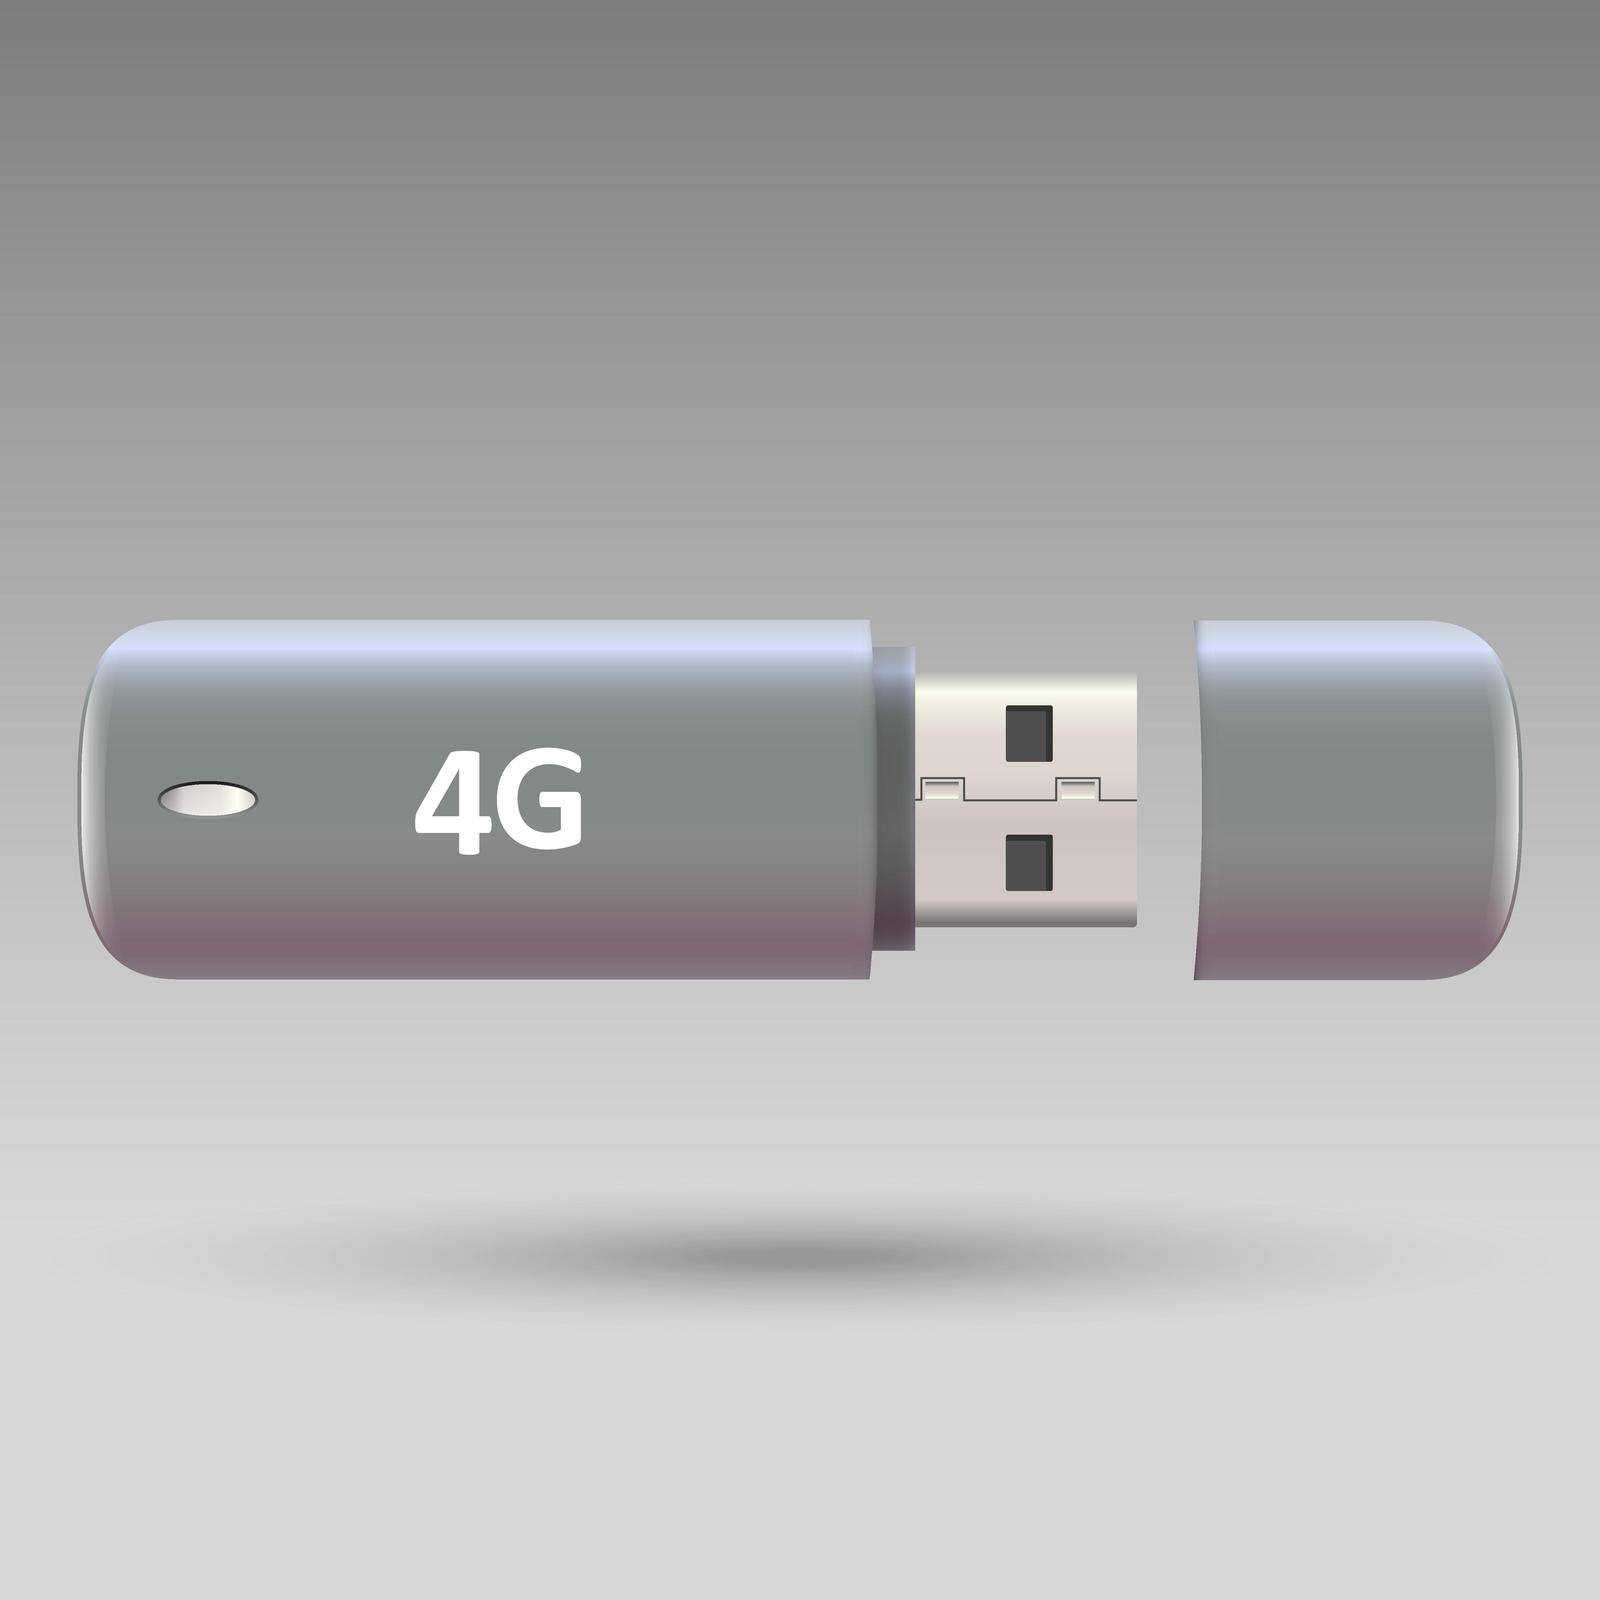 USB wireless modem, 4G Portable Internet modem. by grebeshkovmaxim